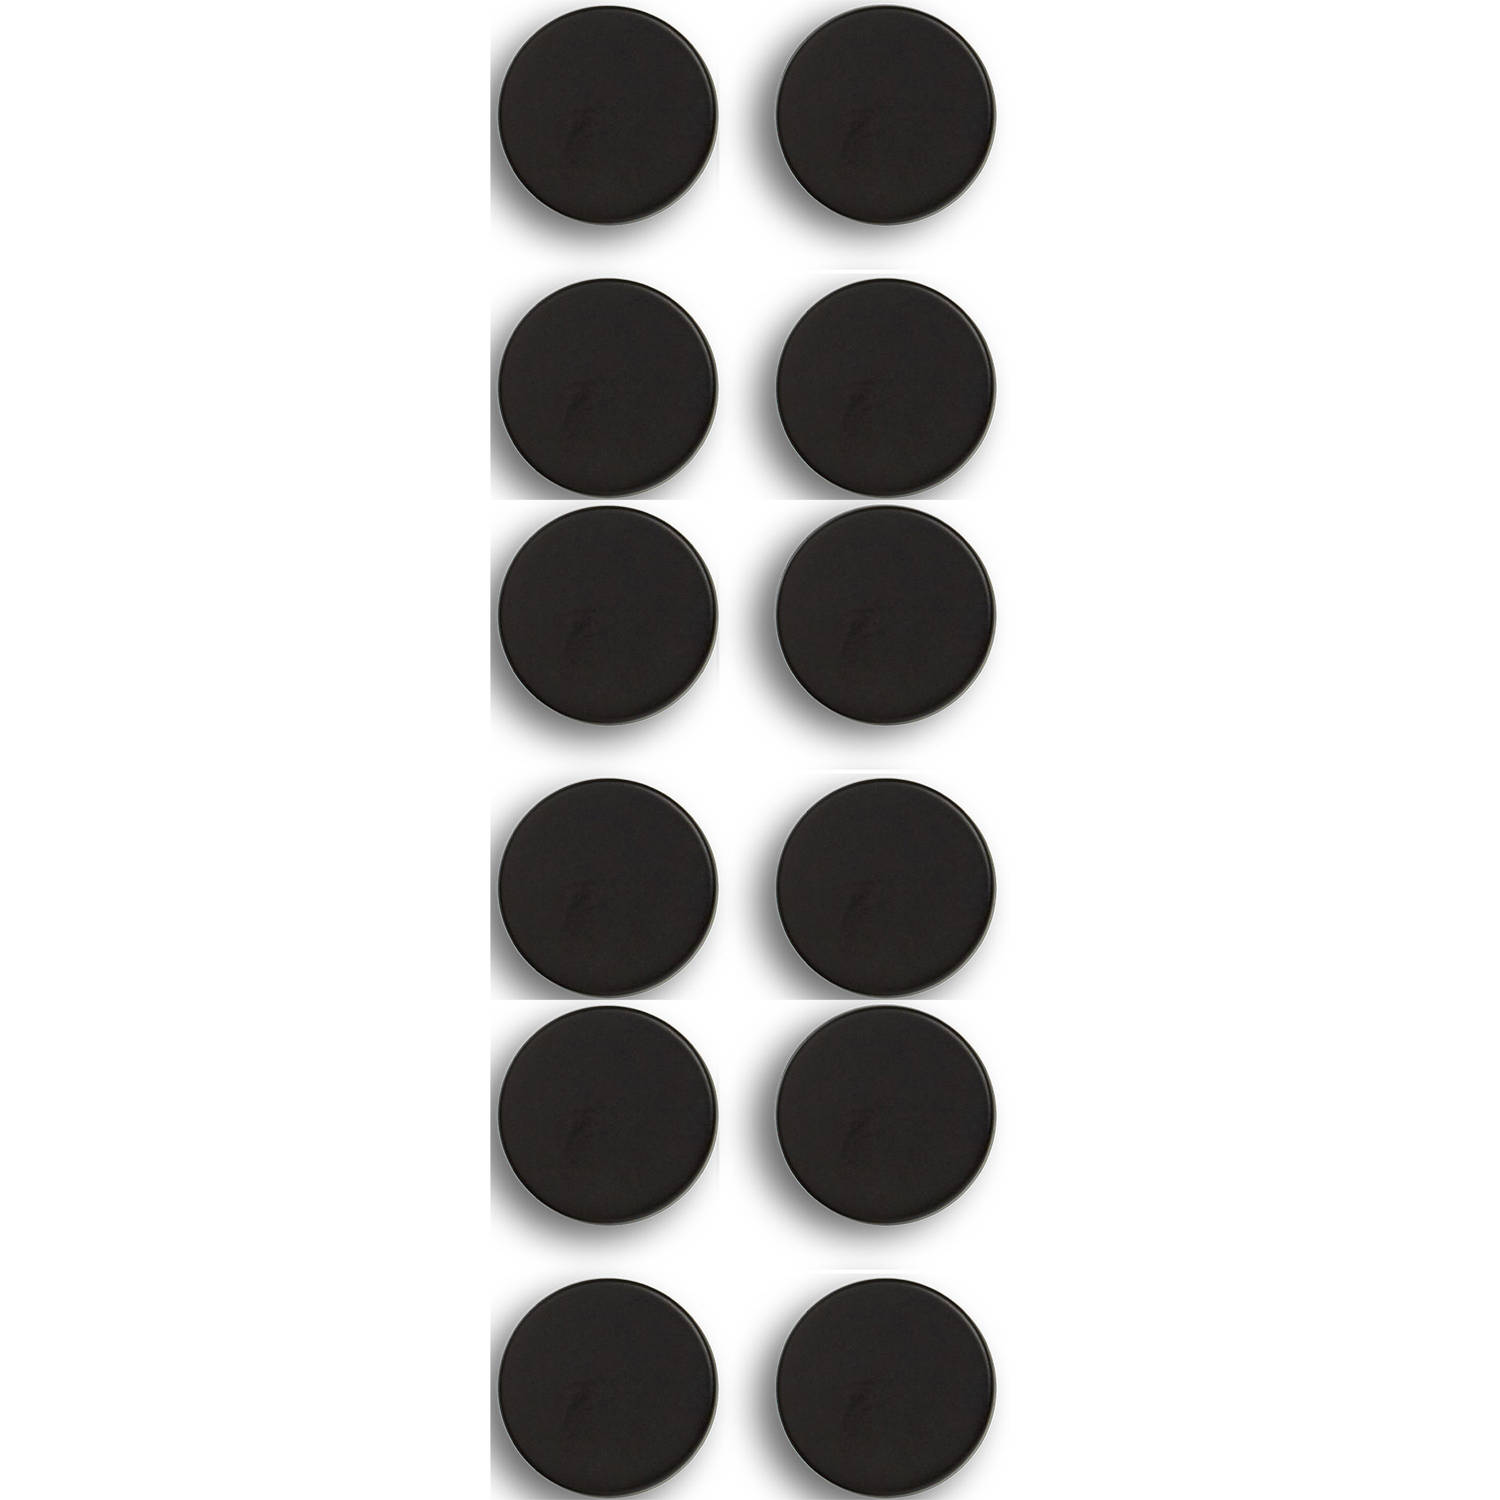 Whiteboard-koelkast magneten extra sterk 12x mat zwart 2 cm Magneten